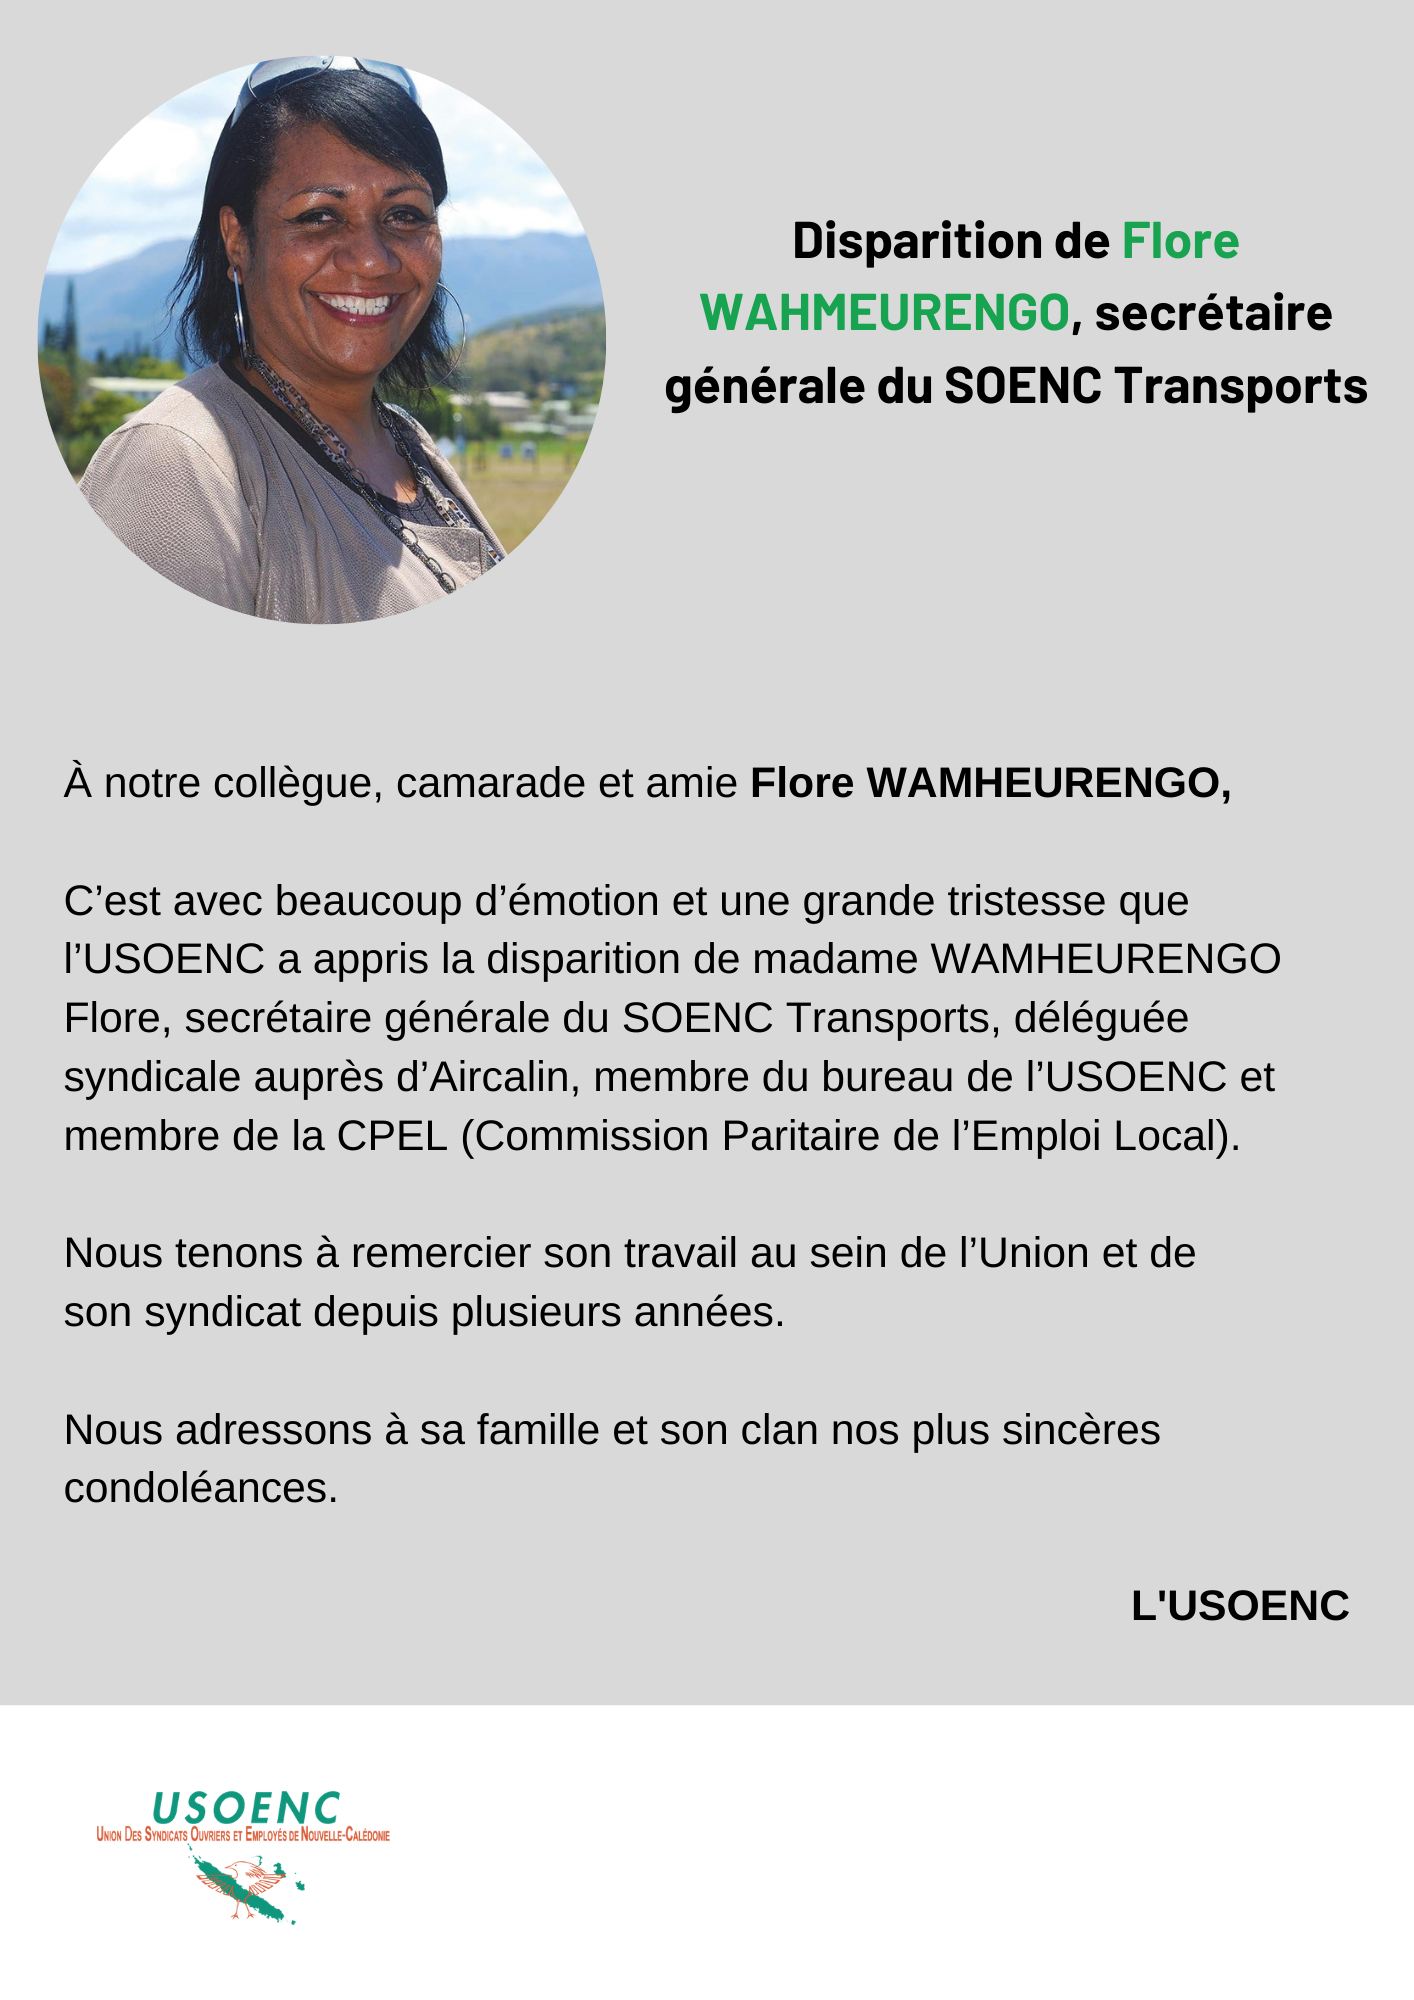 Disparition de Flore WAHMEURENGO, secrétaire générale du SOENC Transports